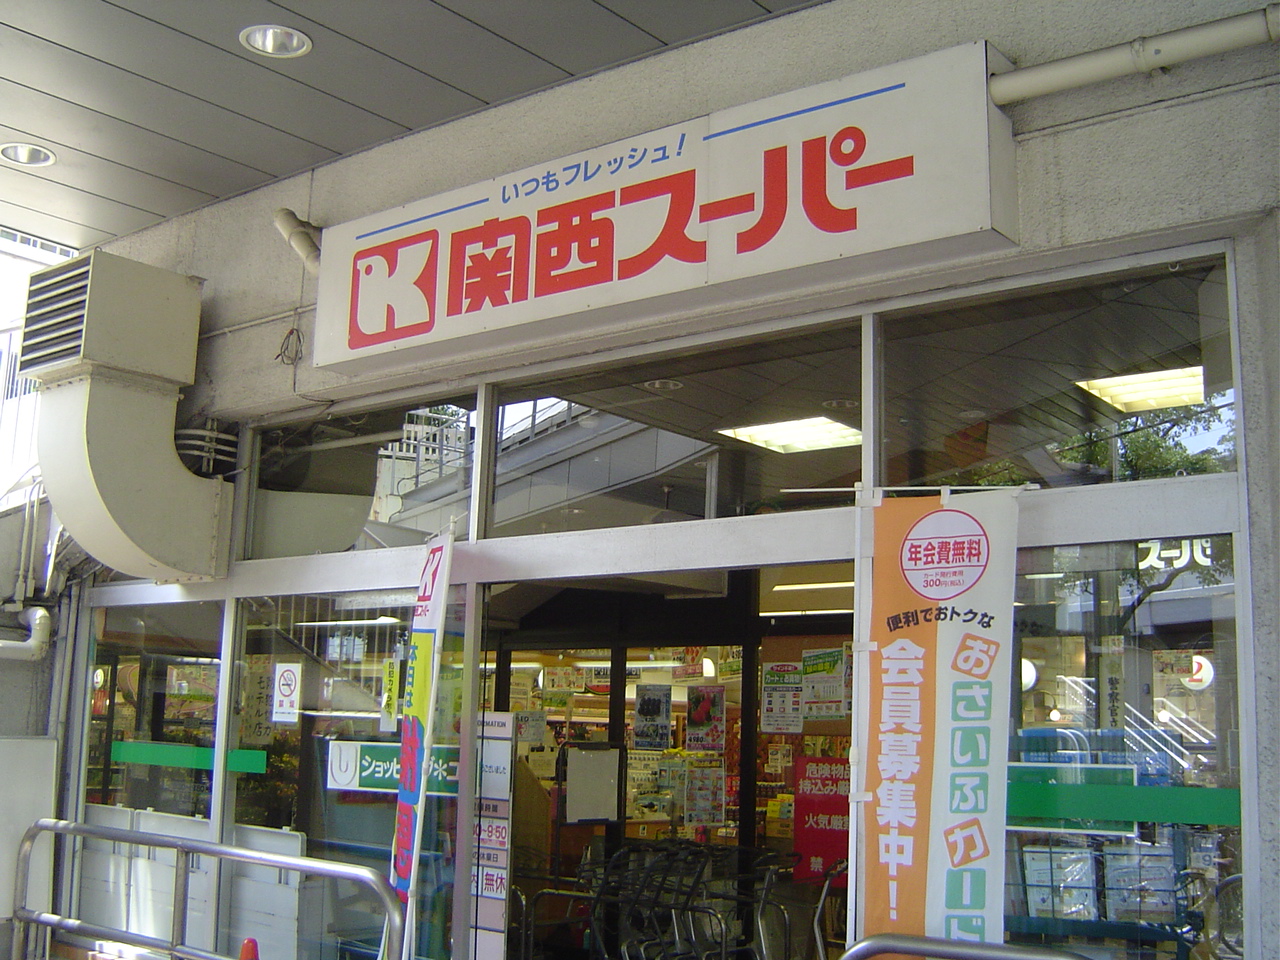 Supermarket. 521m to the Kansai Super Hyogo store (Super)